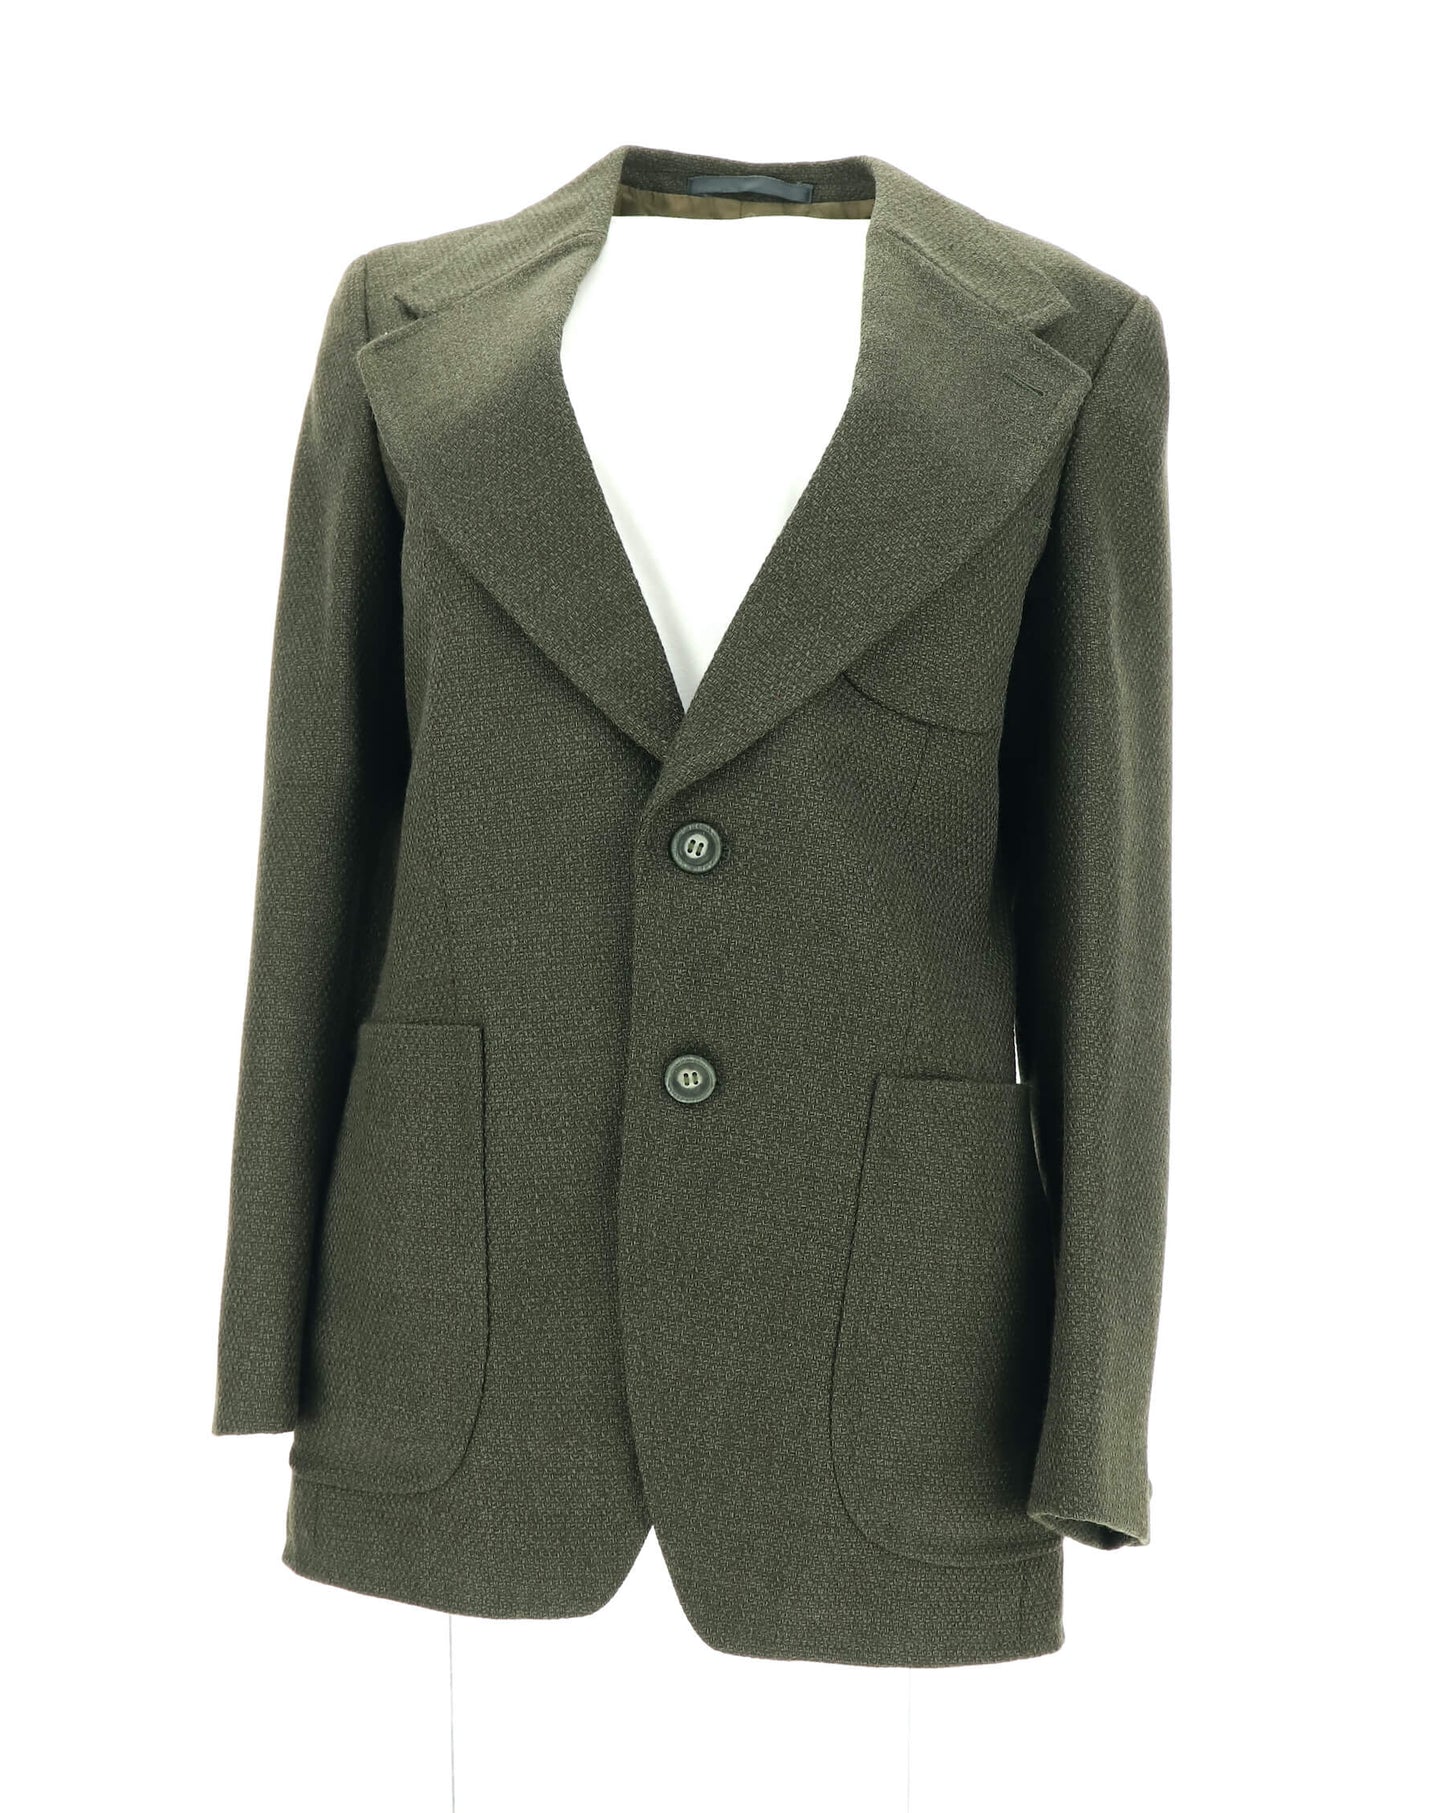 Dark Olive Green Vintage Wool Blazer